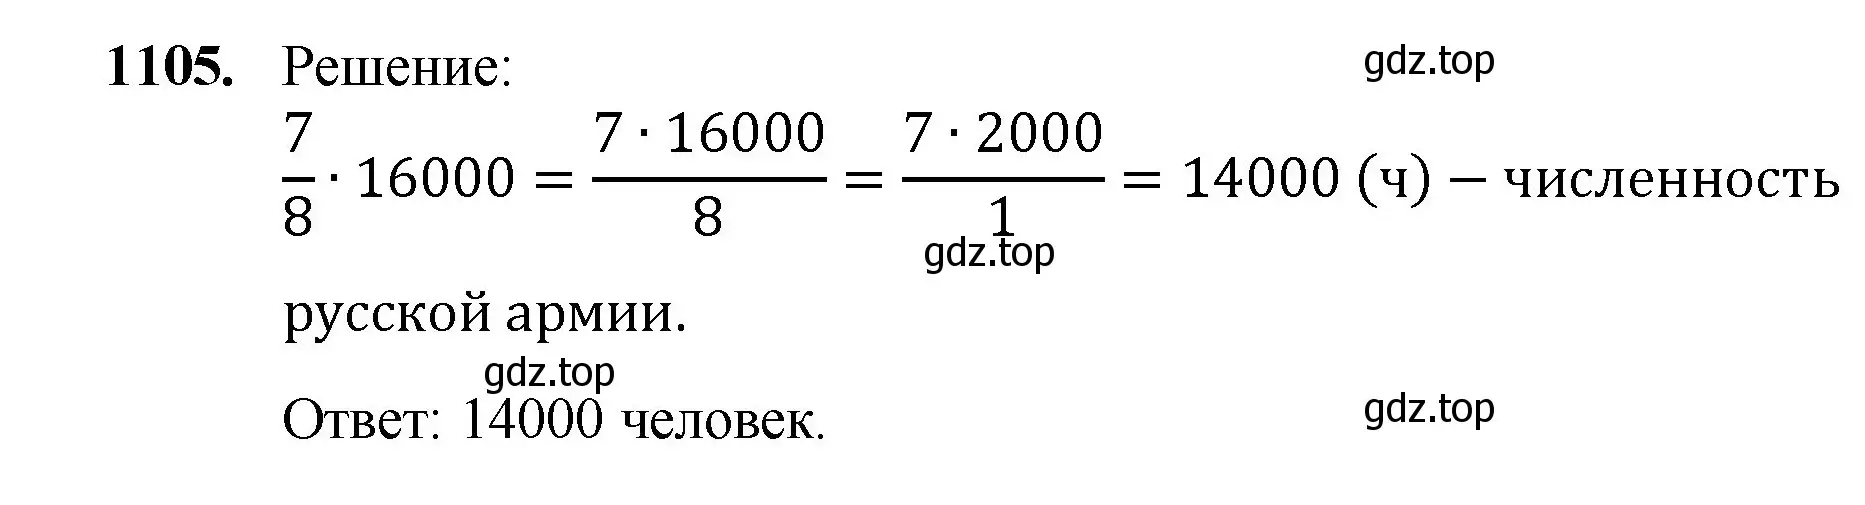 Решение номер 1105 (страница 247) гдз по математике 5 класс Мерзляк, Полонский, учебник